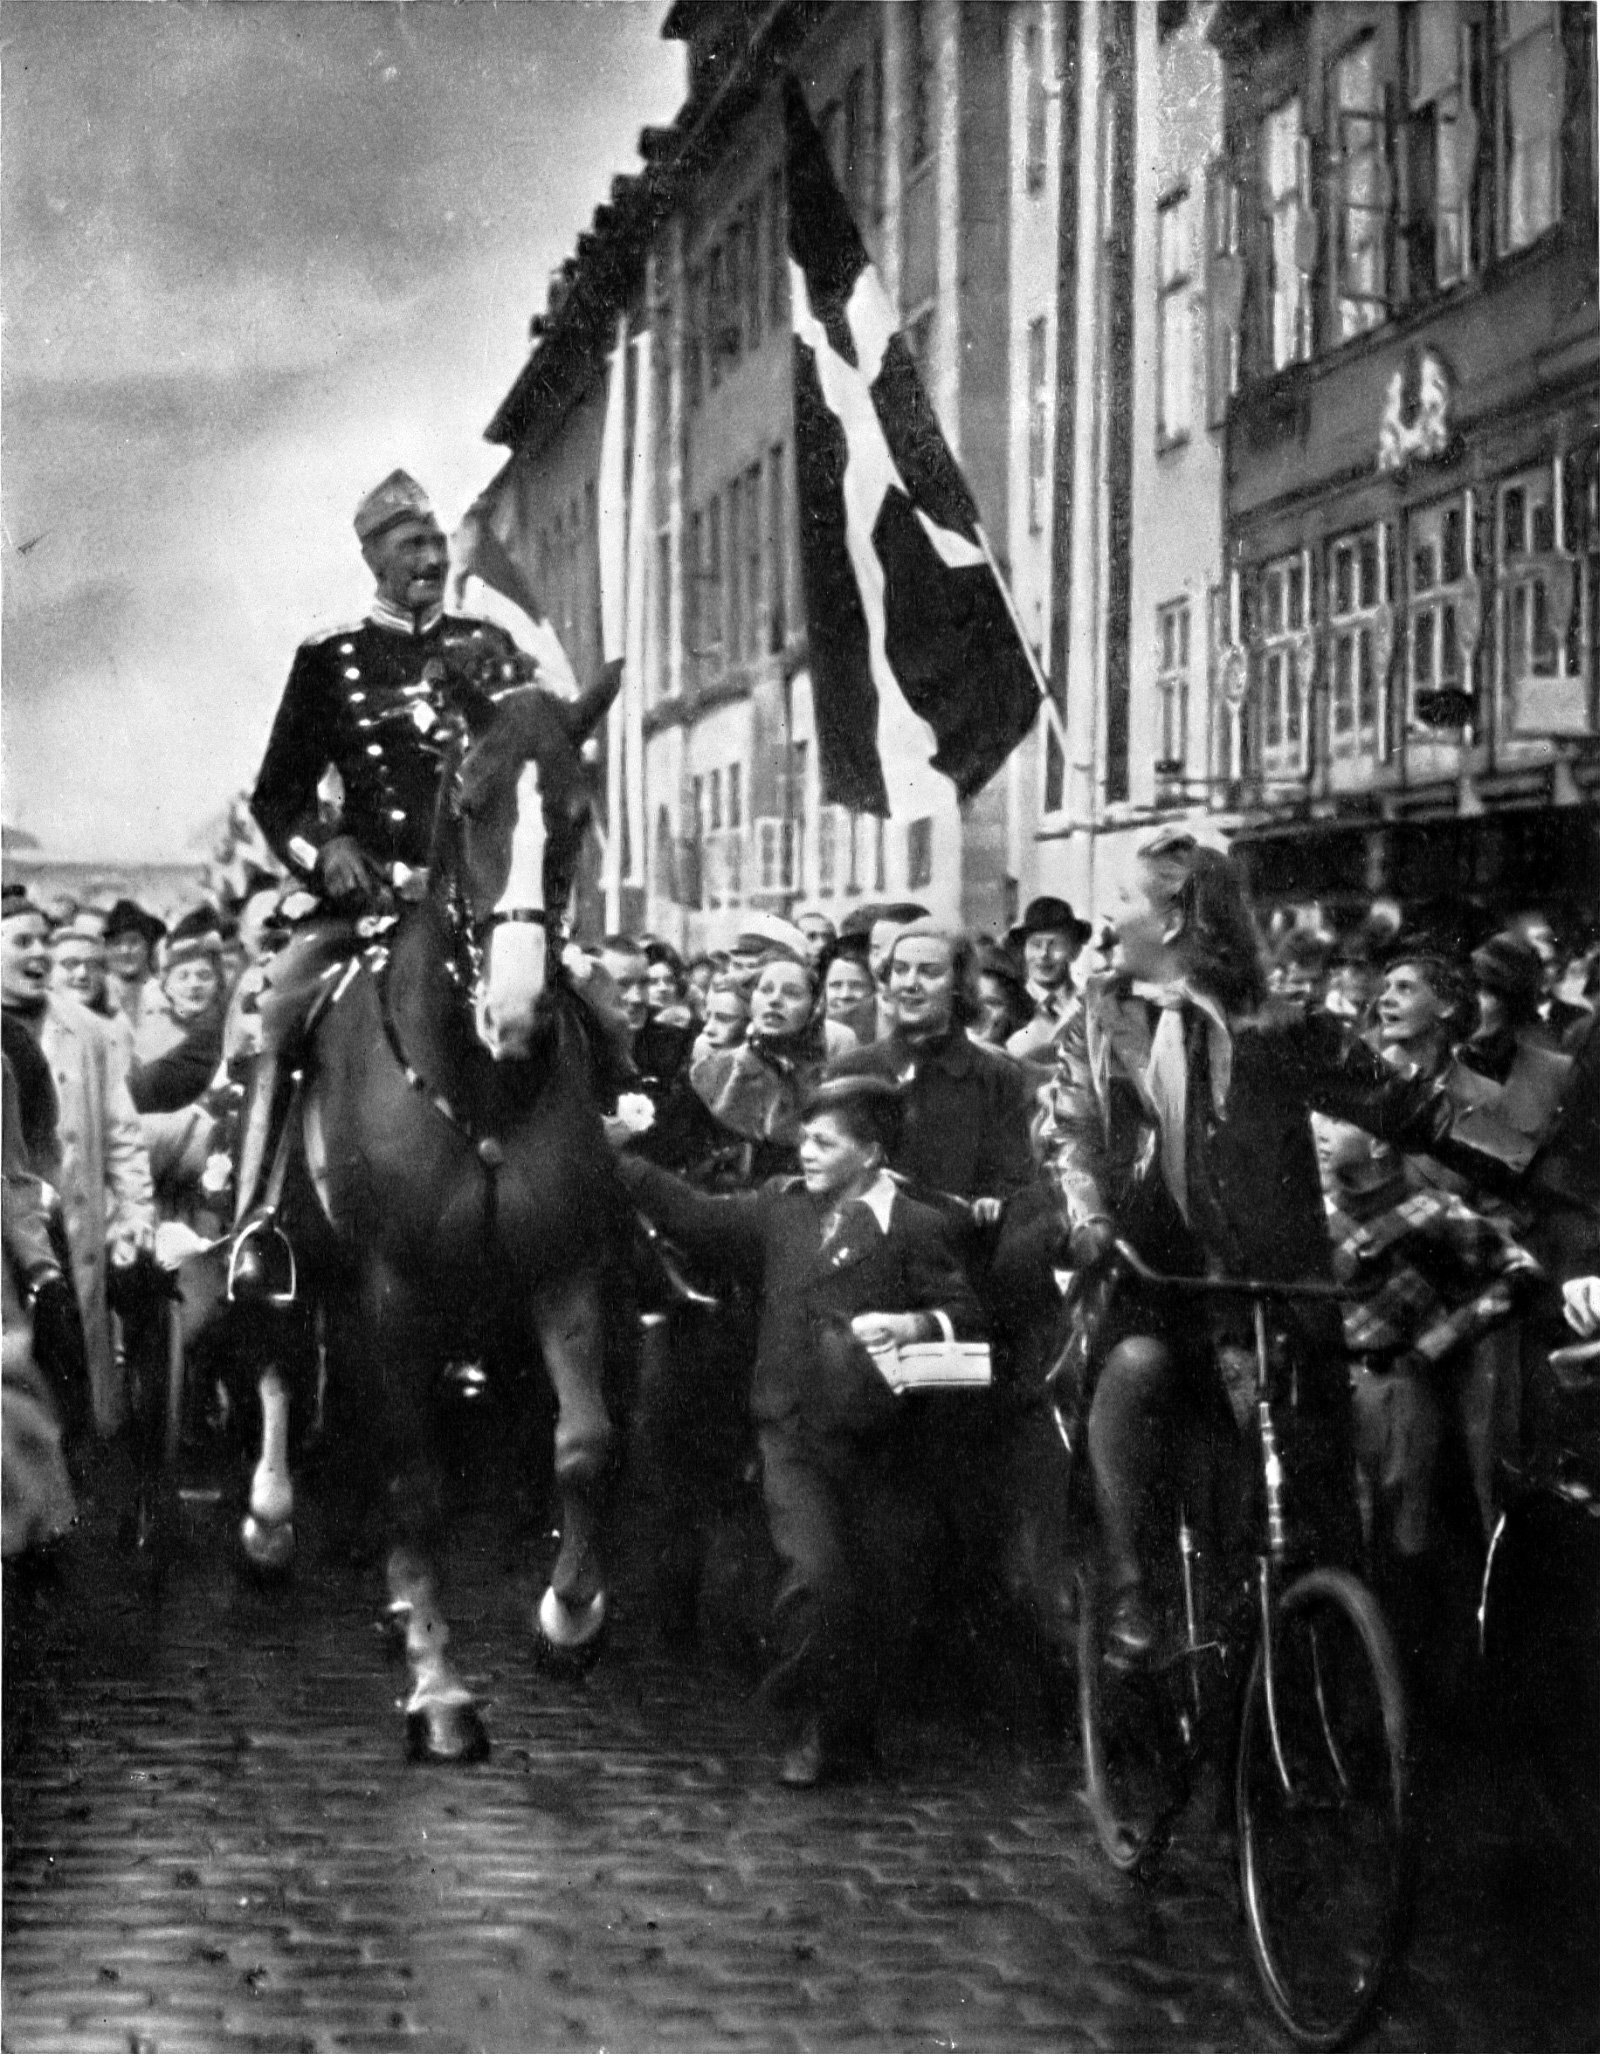 King Christian in Copenhagen, 1940.